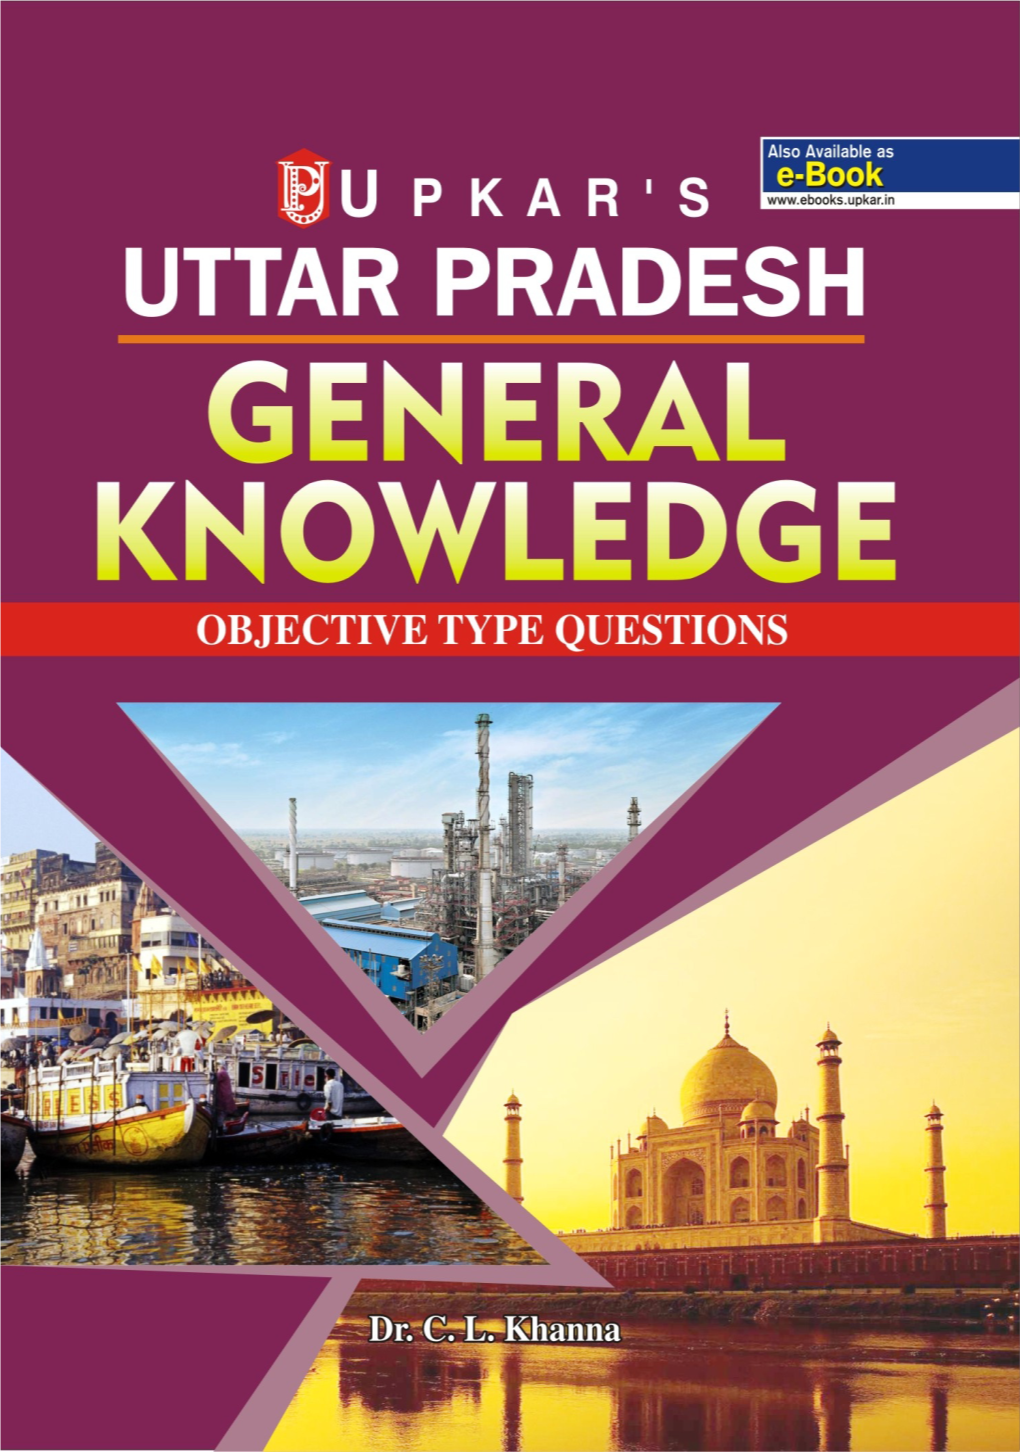 1 Uttar Pradesh : at a Glance